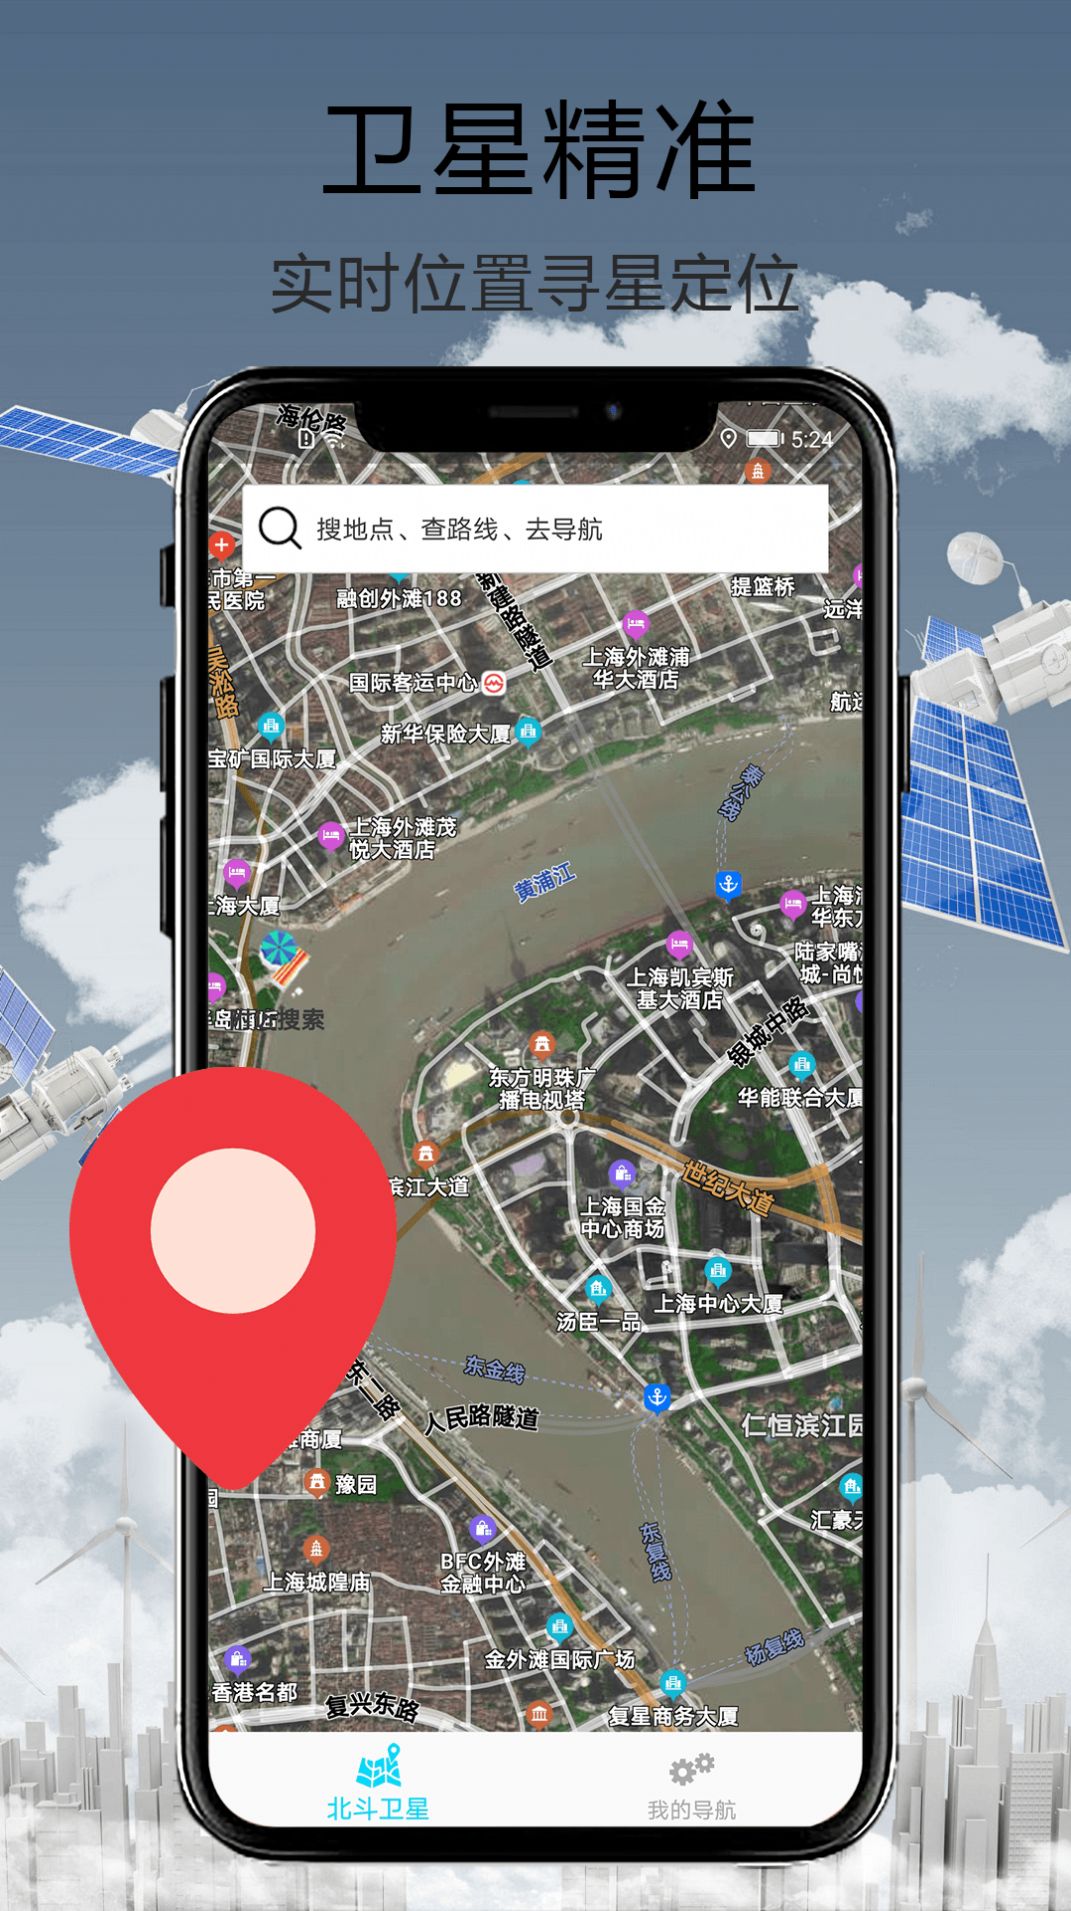 天眼街景导航app图1